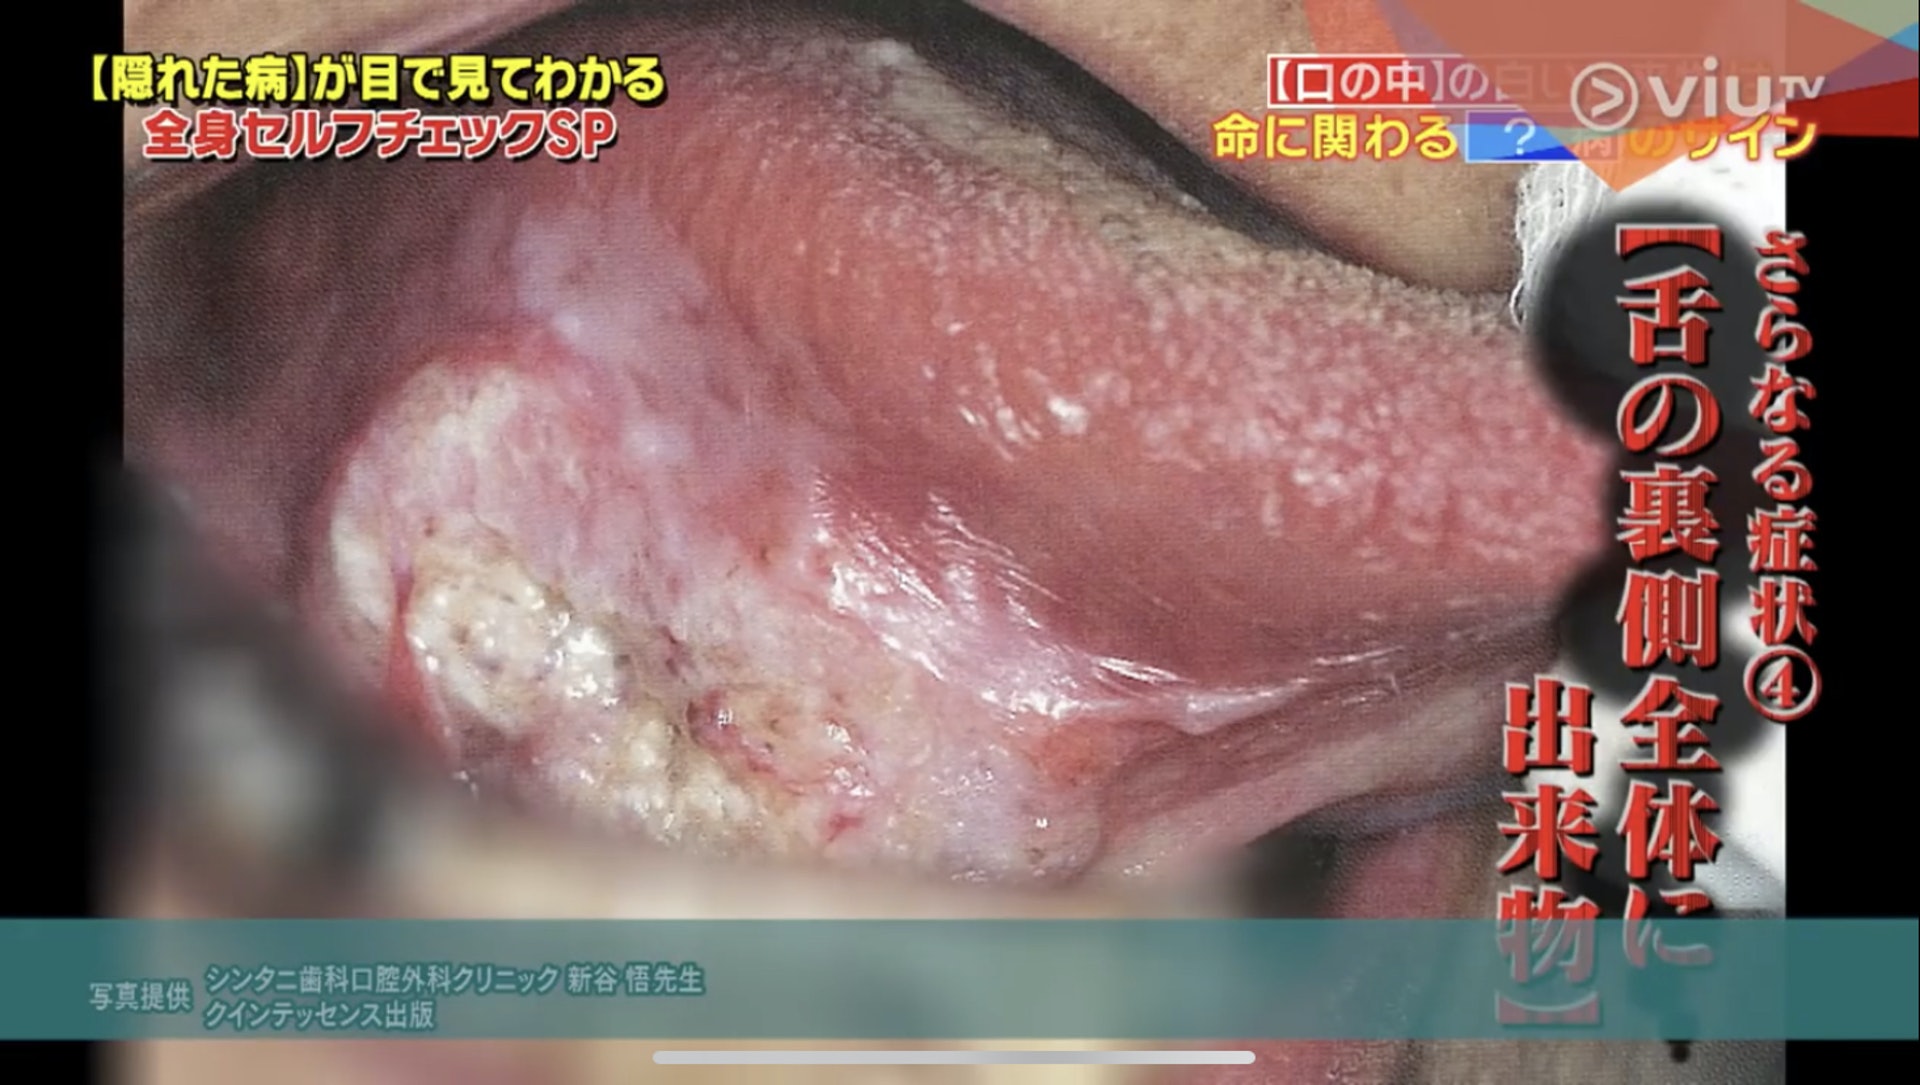 原本細小的白瘡，也會發大或蔓延至舌底等其他位置。（Viu TV《恐怖醫學》影片截圖）